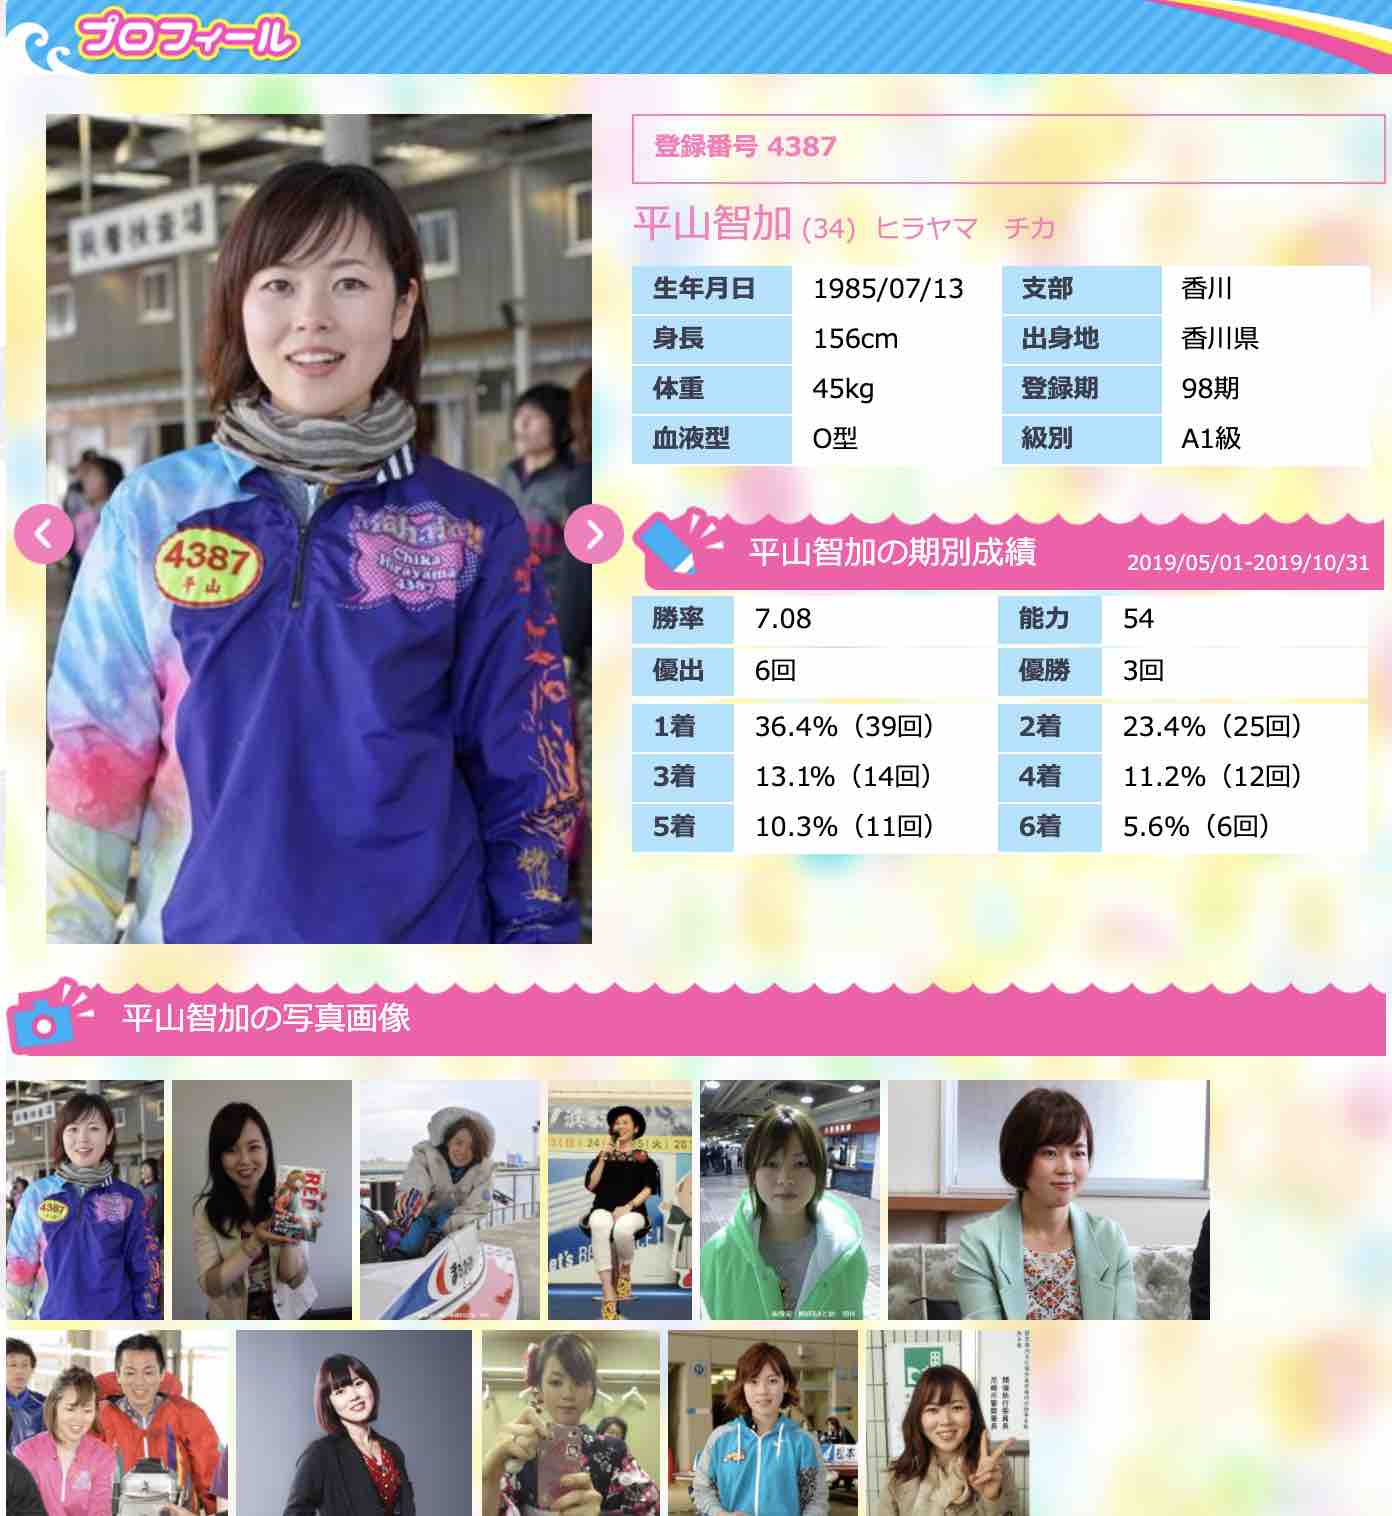 競艇女子、ボートレーサー平山智加選手の写真や情報